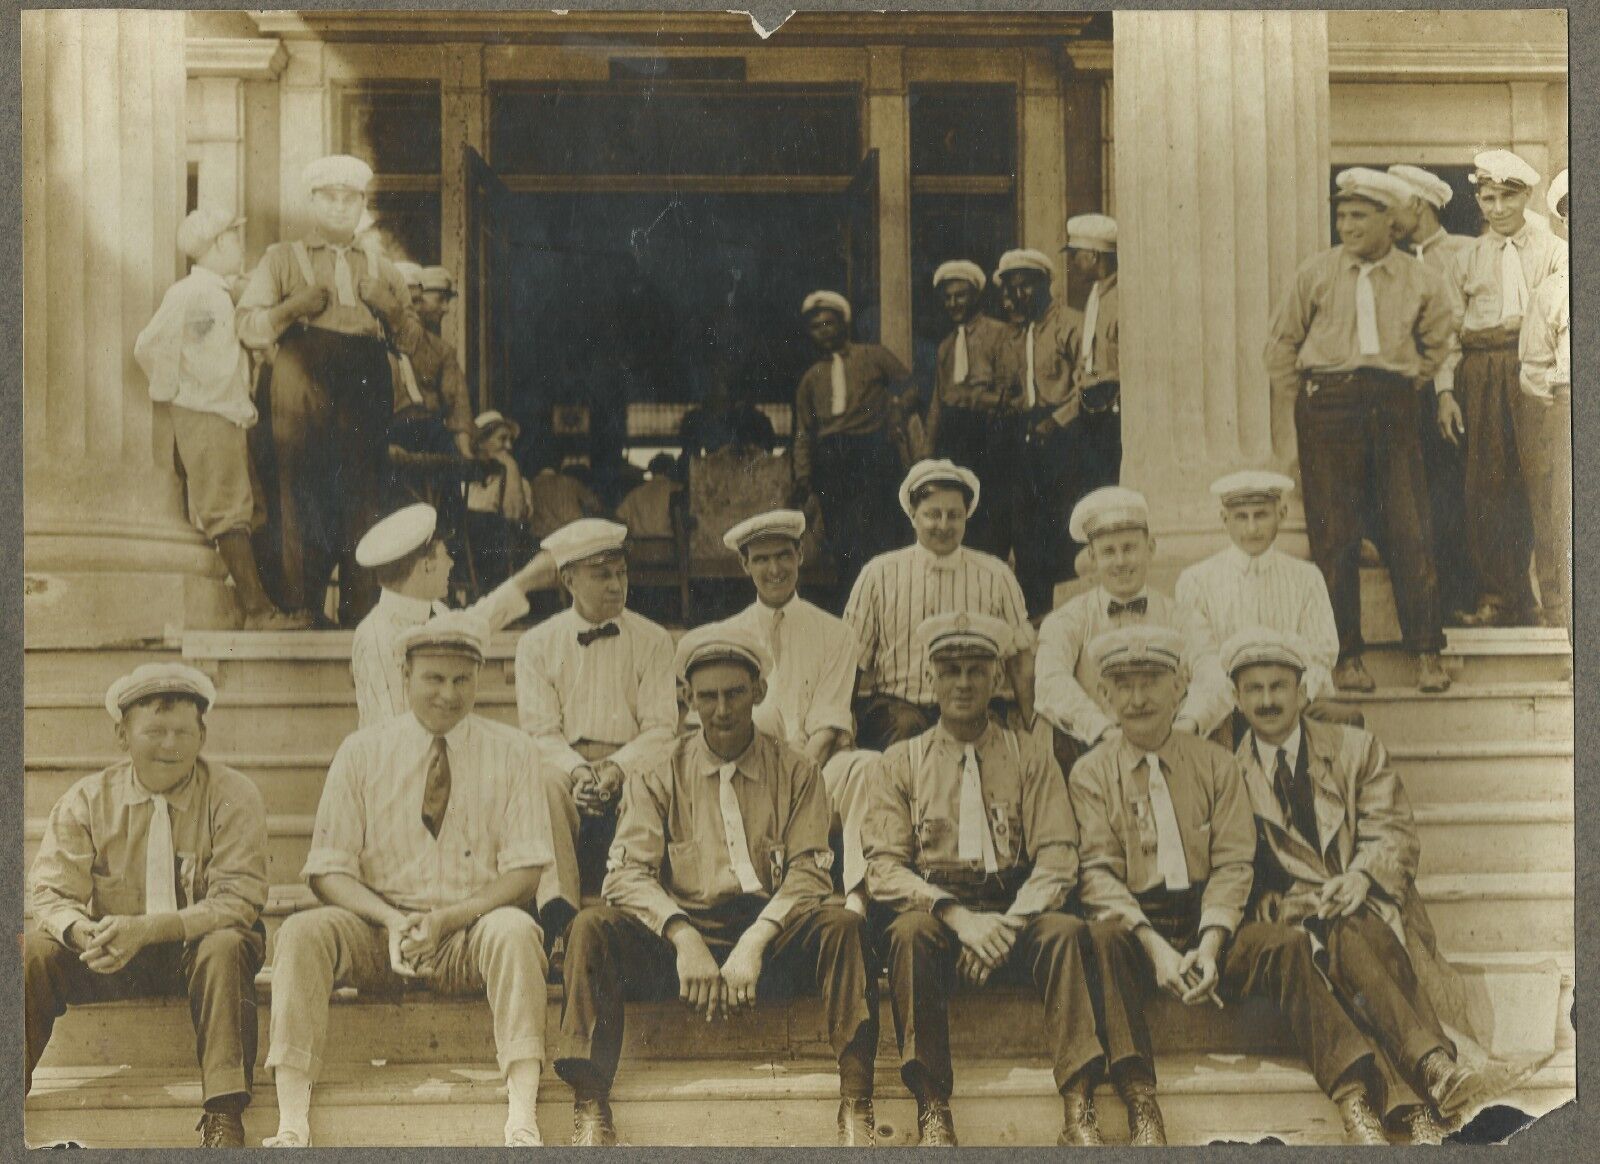 Vintage Cabinet Photo Men  Sitting on Steps Together Occupational Uniform